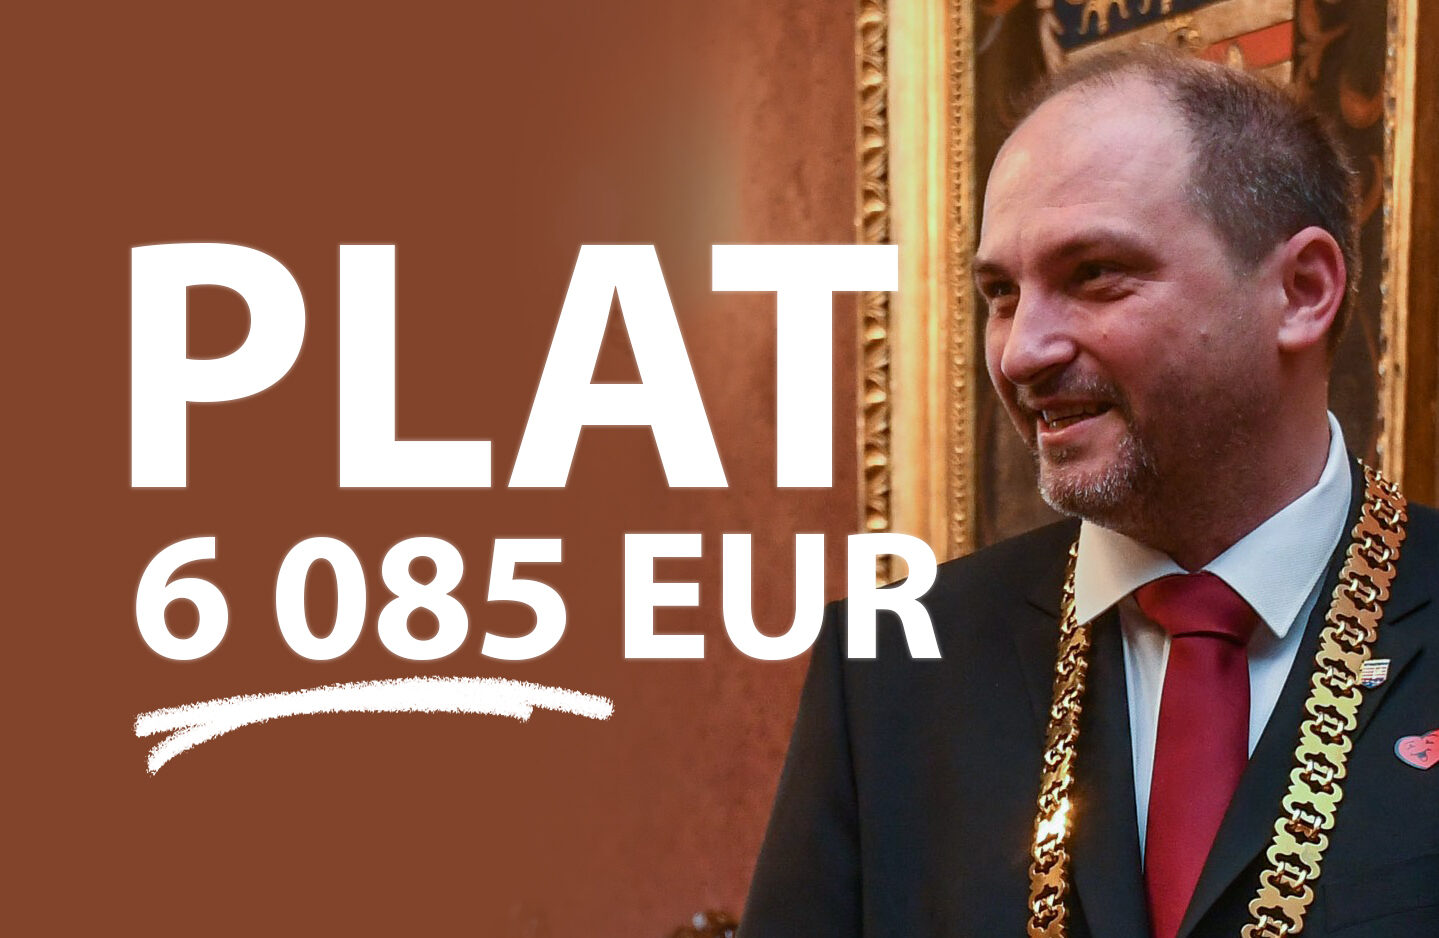 Polaček má plat 6 085 EUR, zaslúži si ho? Pýtali sme sa poslancov mesta!